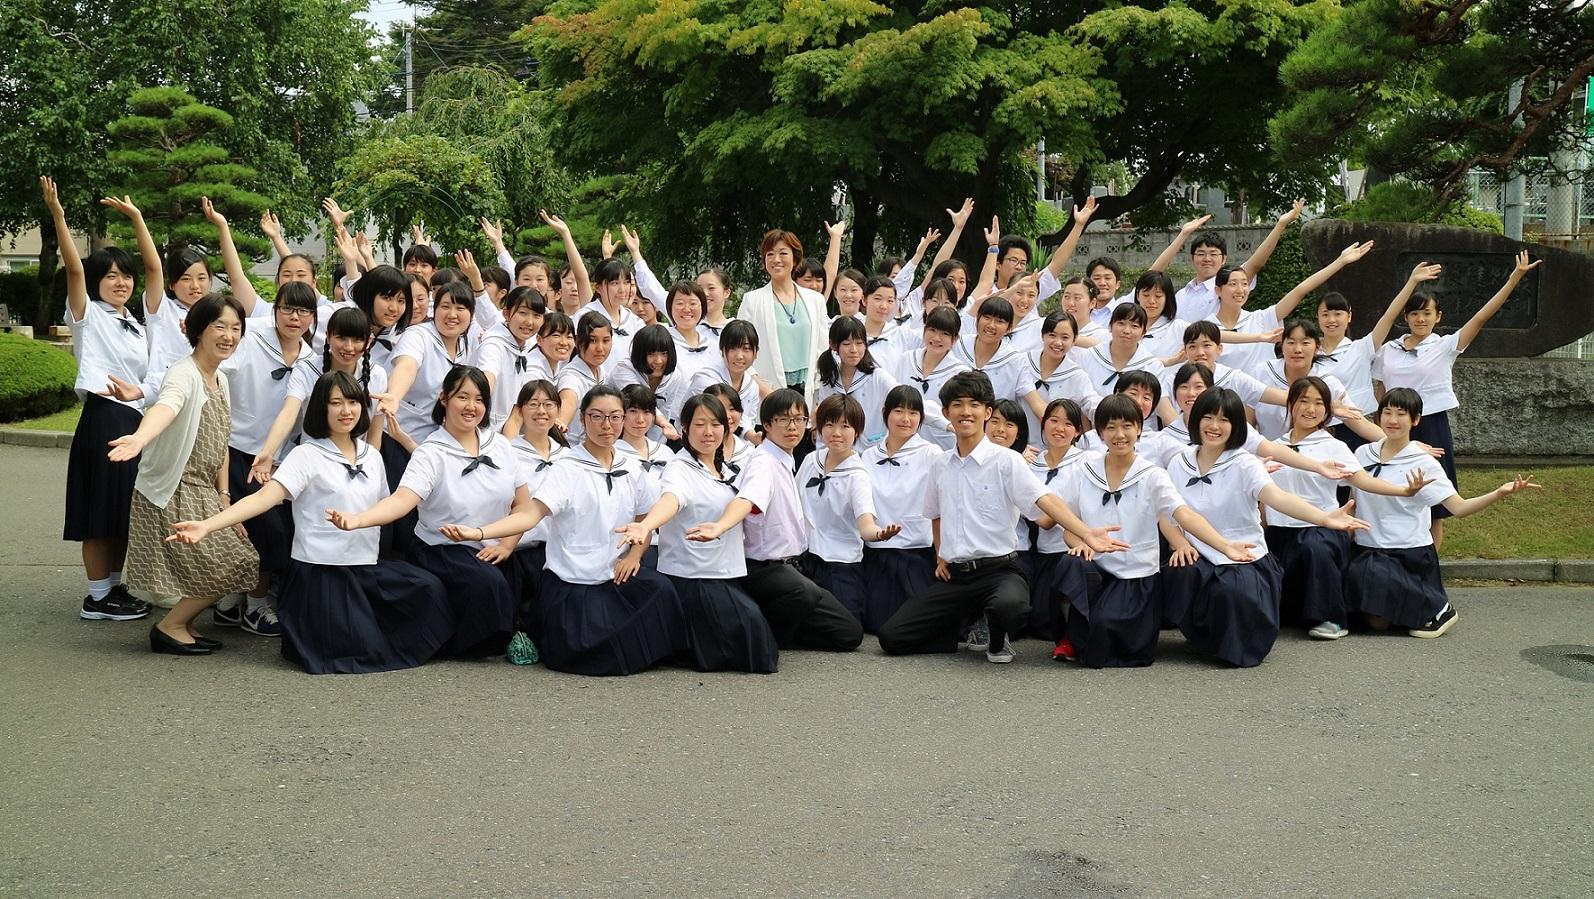 片手を横に広げてきれいなポーズをとって撮影された北翔さんと生徒たちの集合写真